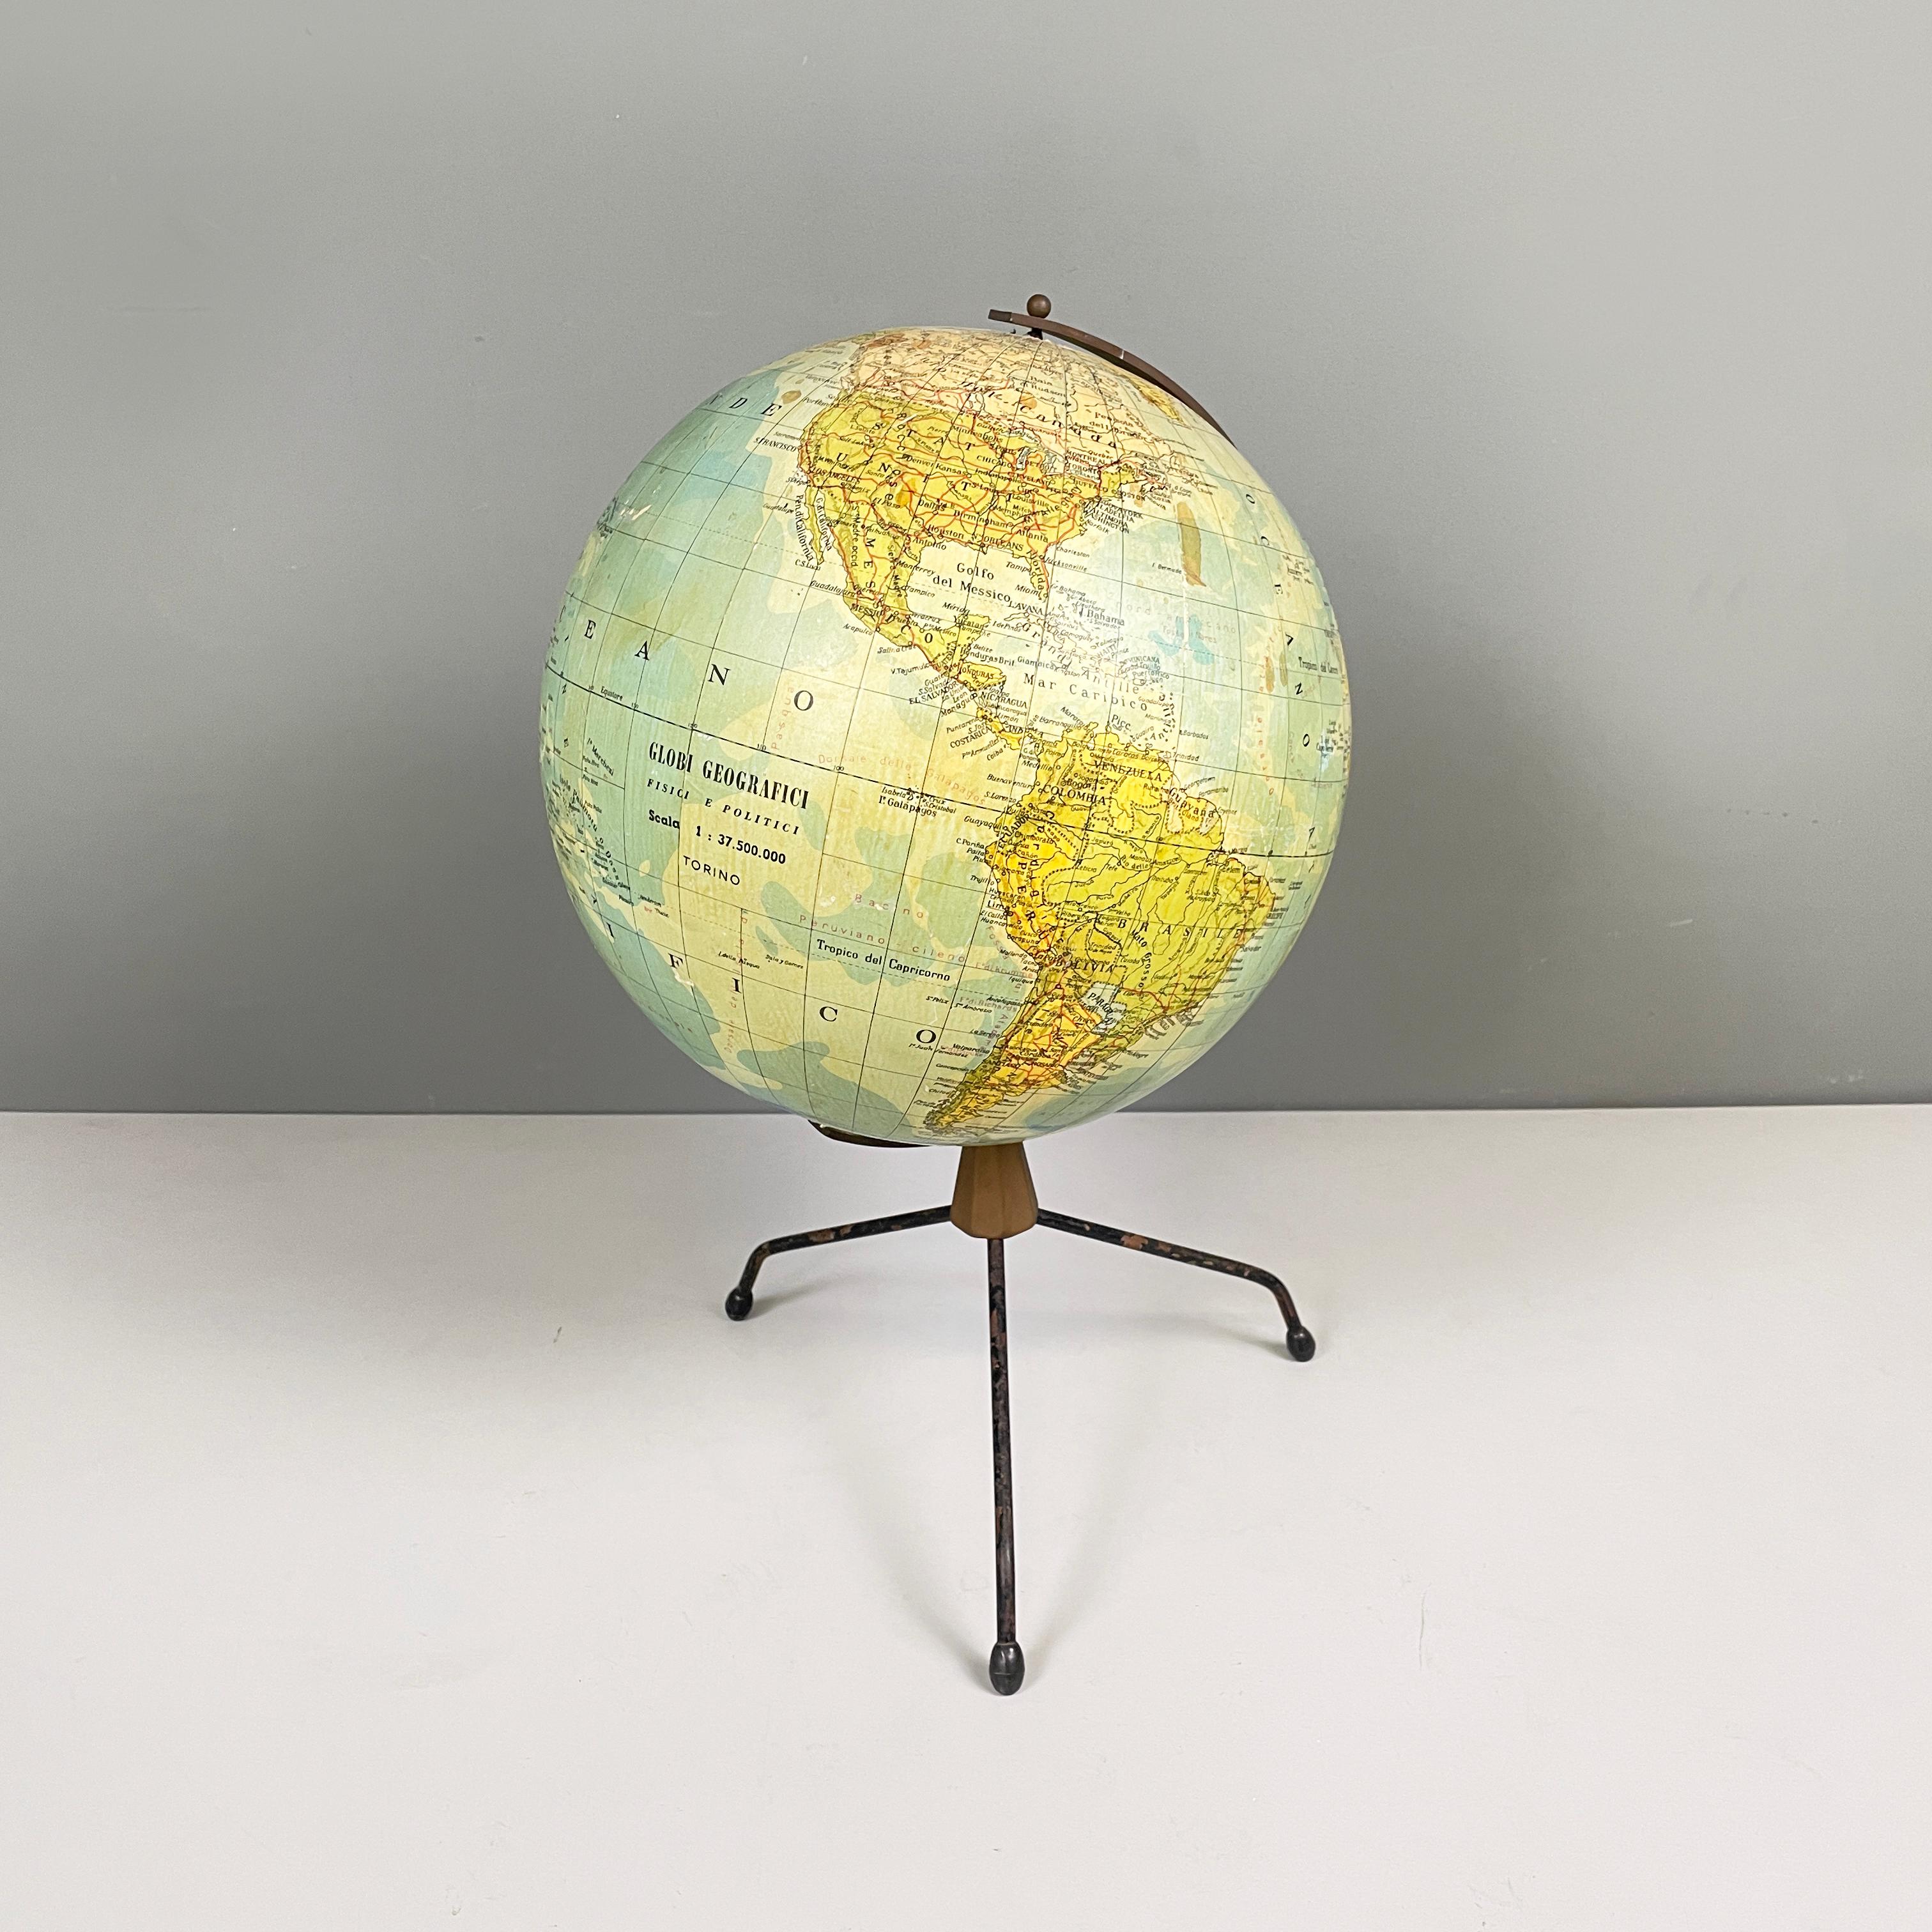 Italienische moderne Tisch Globus Karte der Welt in Metall, 1960er Jahre
Tischkarte der Welt mit Metallstruktur. Der Globus dreht sich dank der Stifte der gebogenen Metallstruktur. Der Sockel hat 3 Beine aus schwarz lackiertem Metallstab mit ovalen